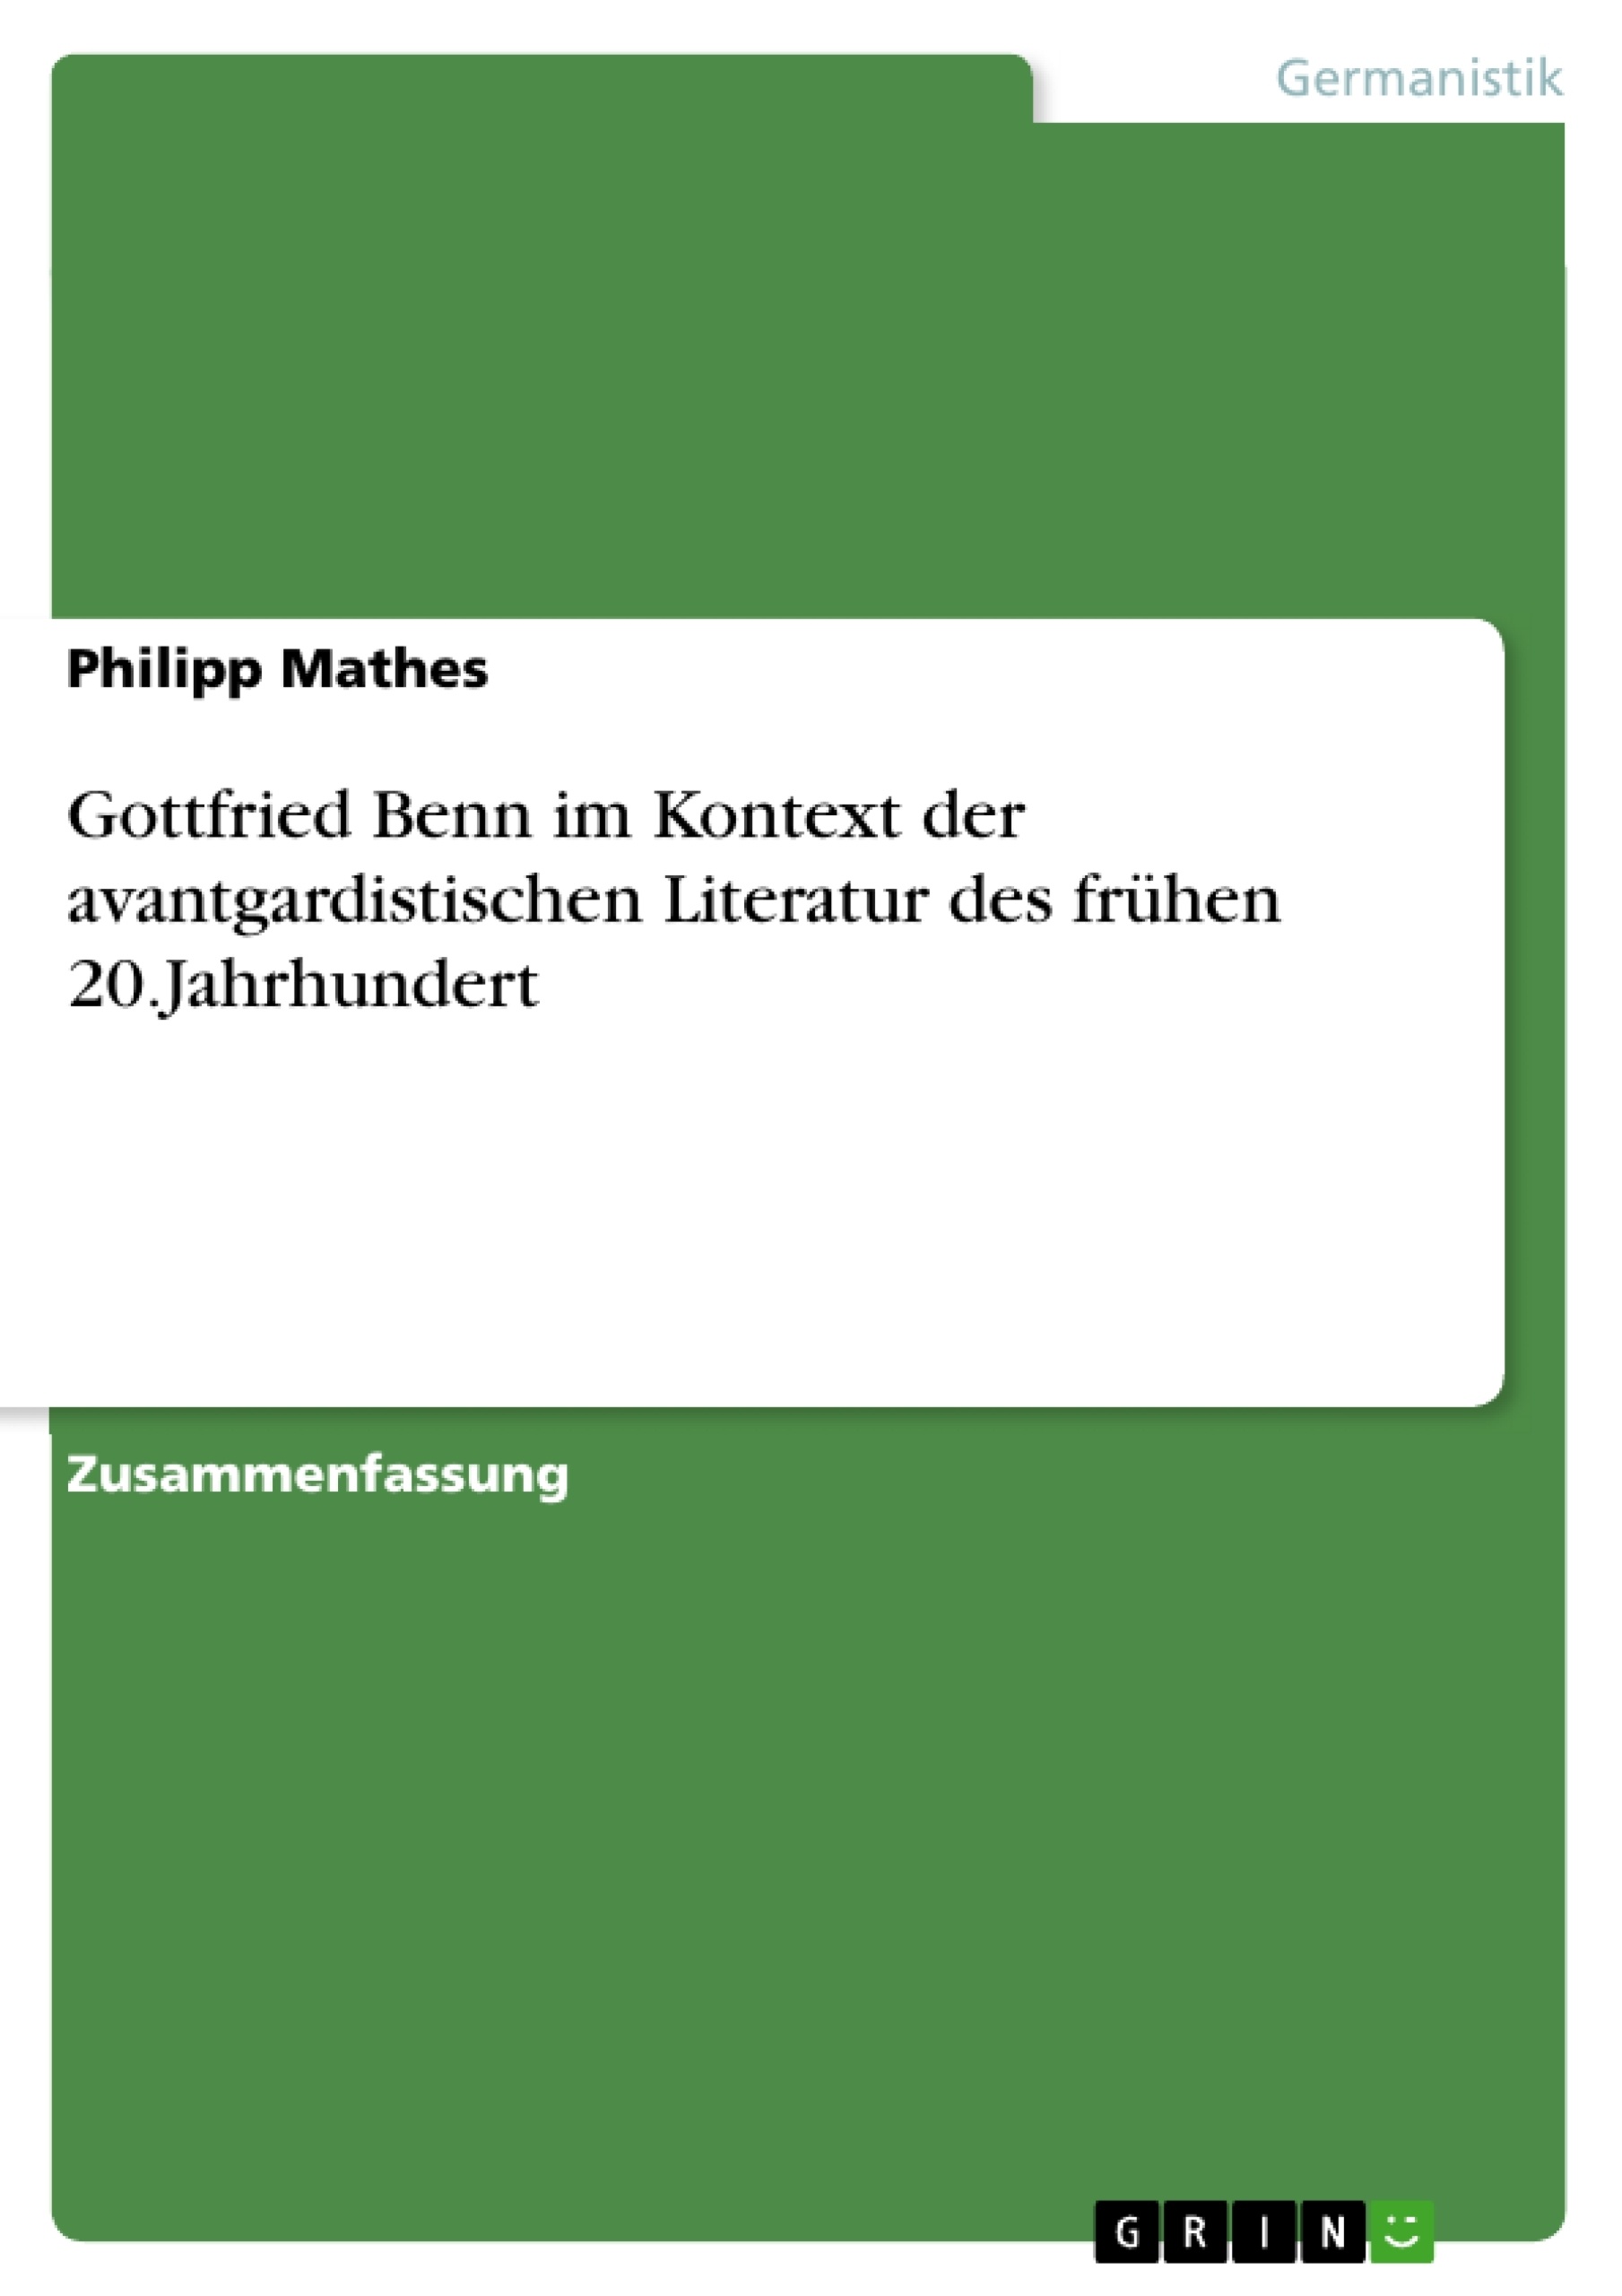 Título: Gottfried Benn im Kontext der avantgardistischen Literatur des frühen 20.Jahrhundert